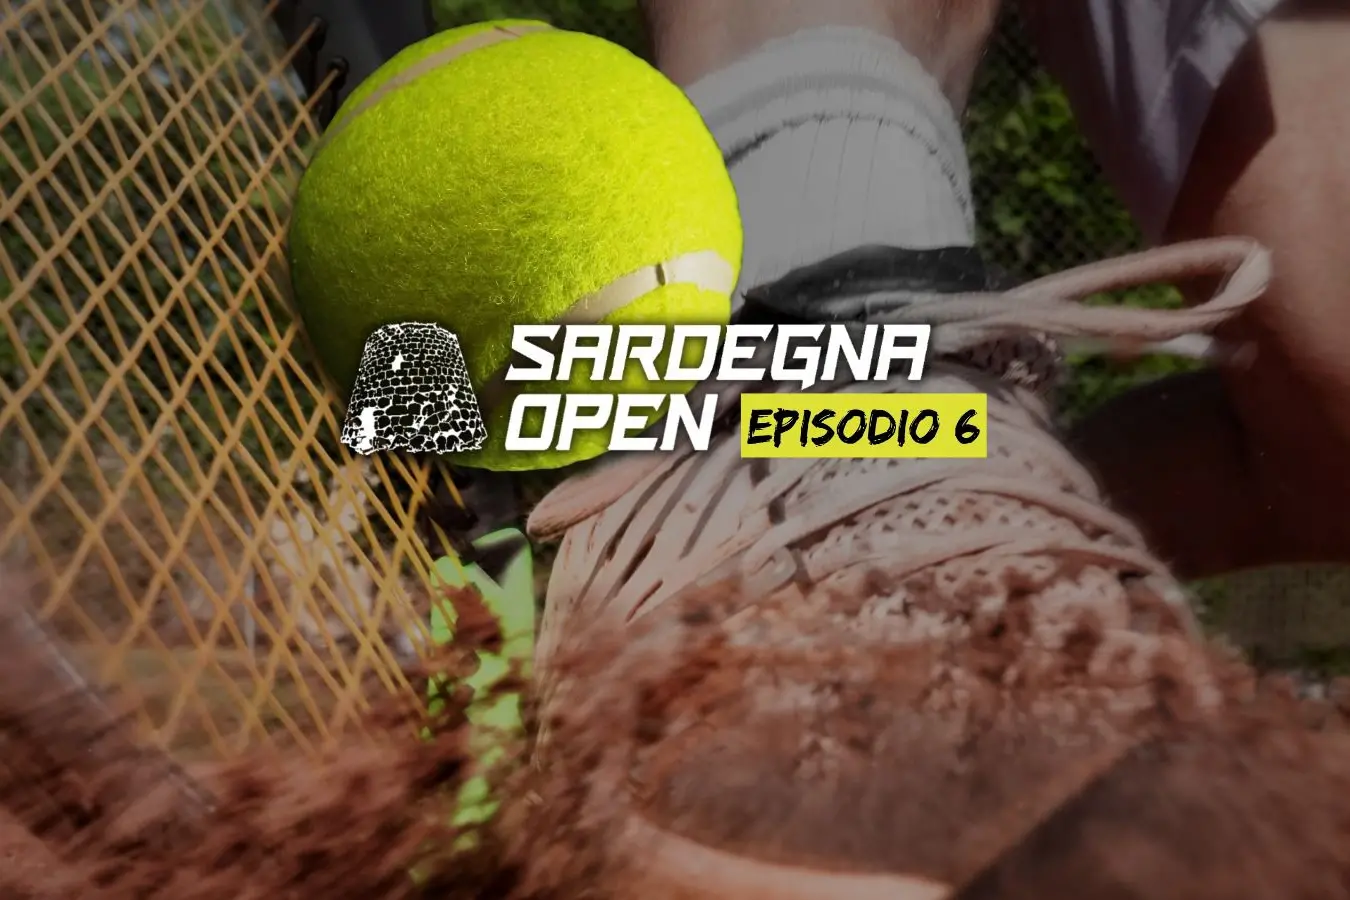 Sardegna Open, sesto episodio